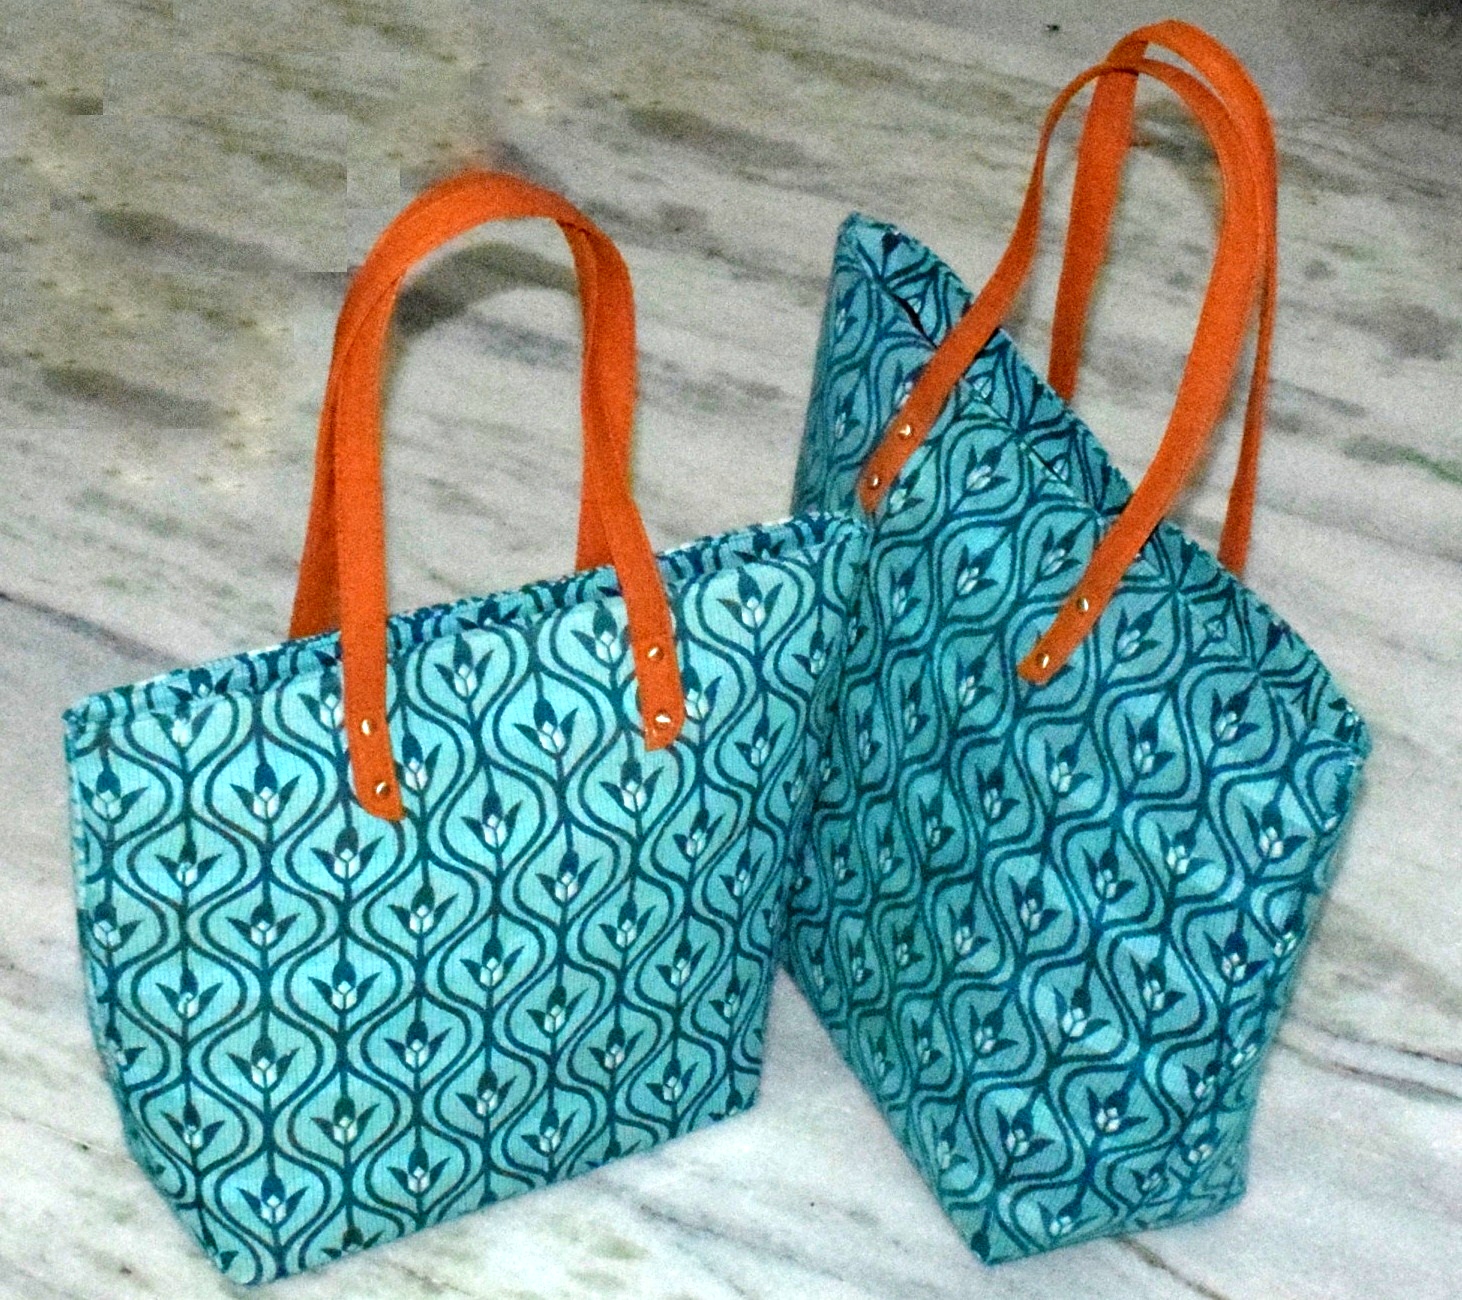 Vintage Sari Handbags Wholesale Bags Indian Printed Handbags Designer Print bags manufacturer ...